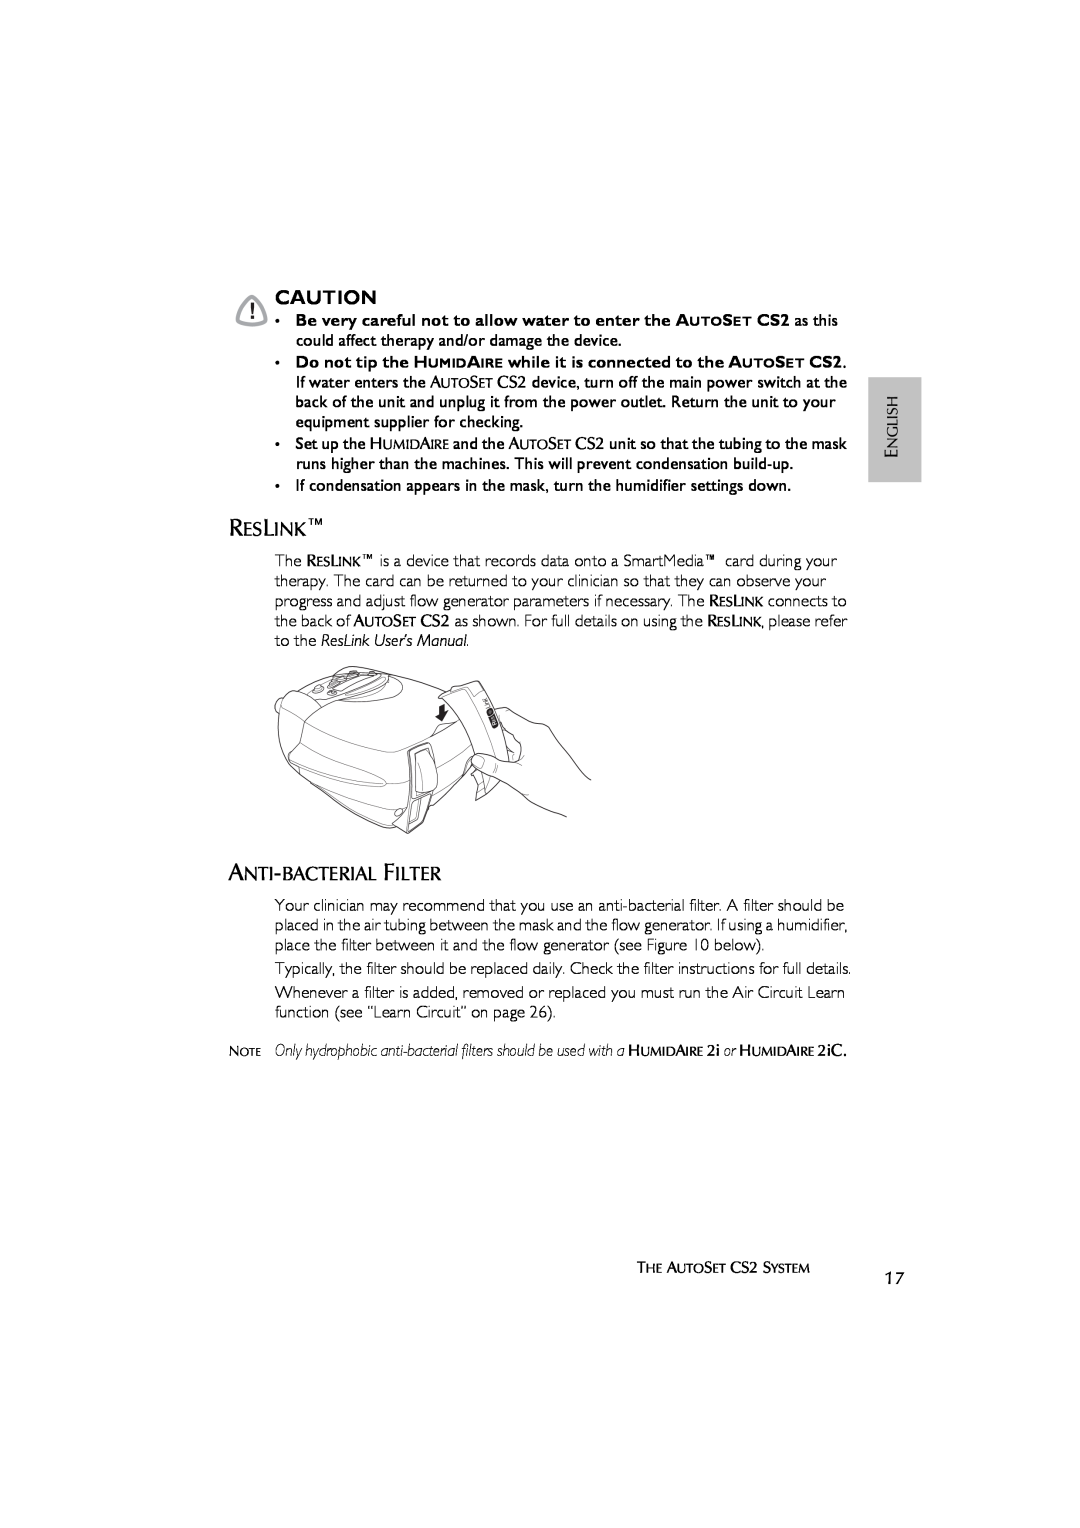 ResMed AutoSet CS 2 user manual Reslink, Anti-Bacterial Filter 